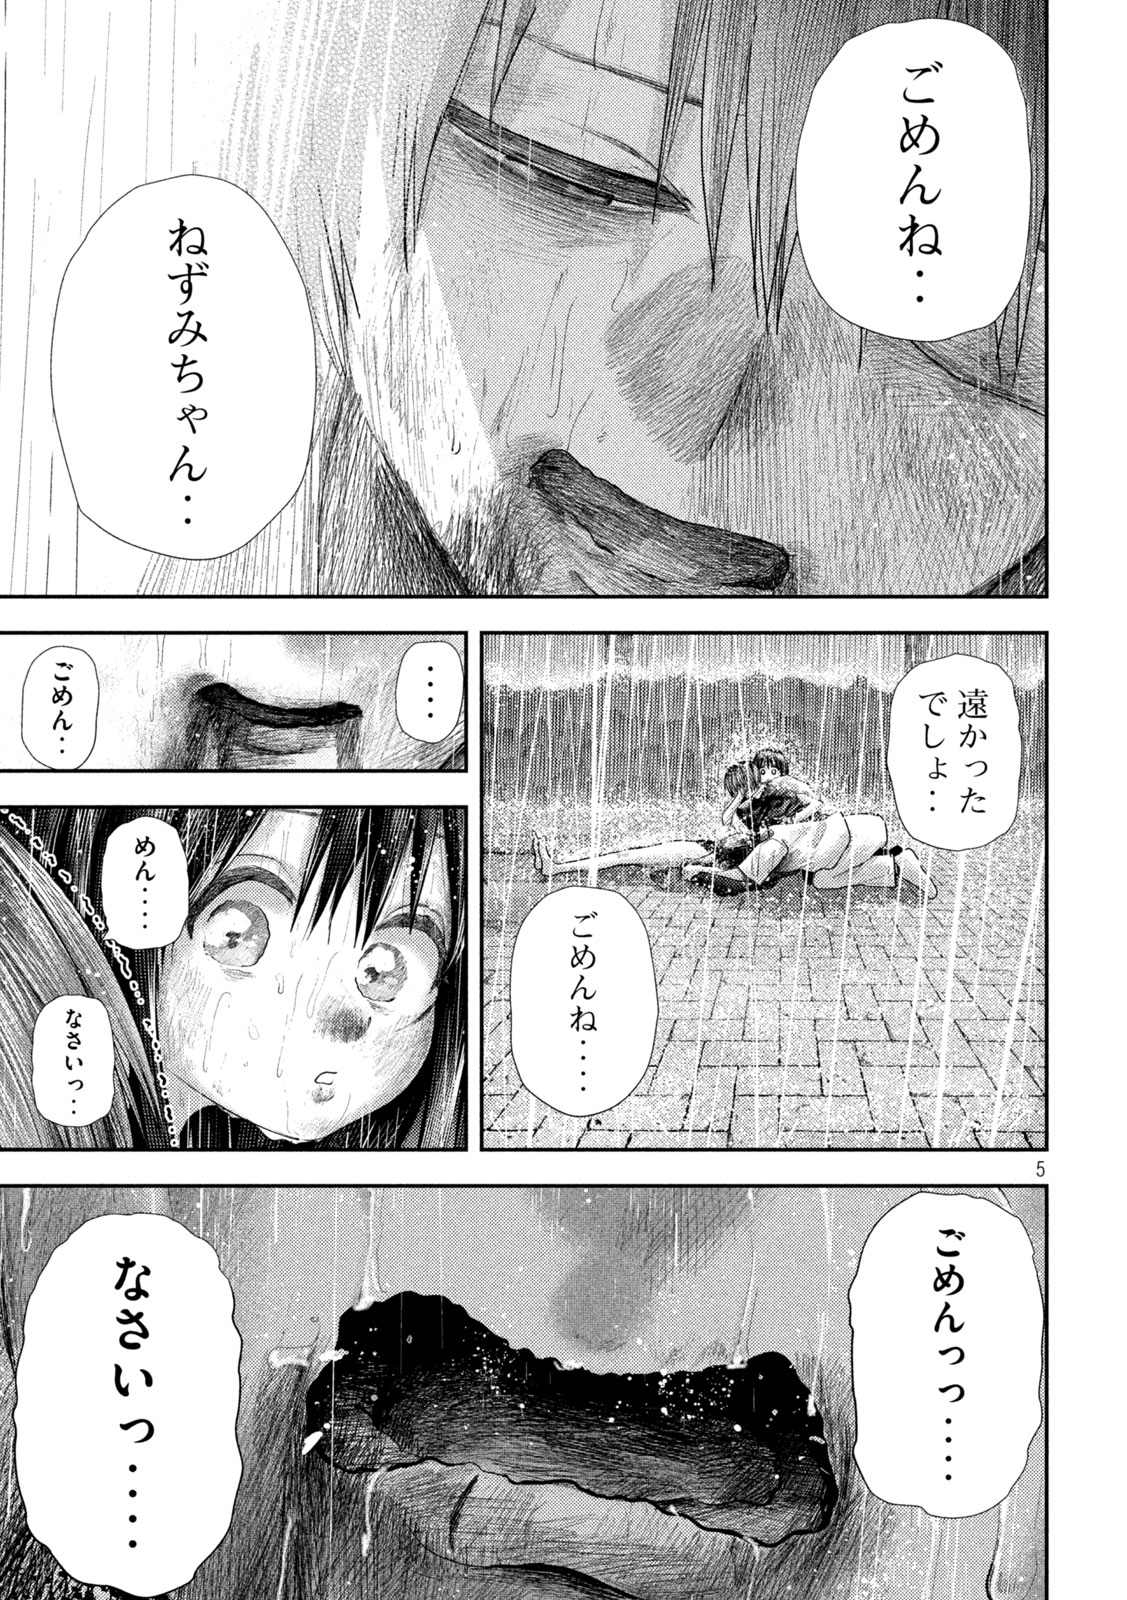 Nezumi no Koi - Chapter 26 - Page 5